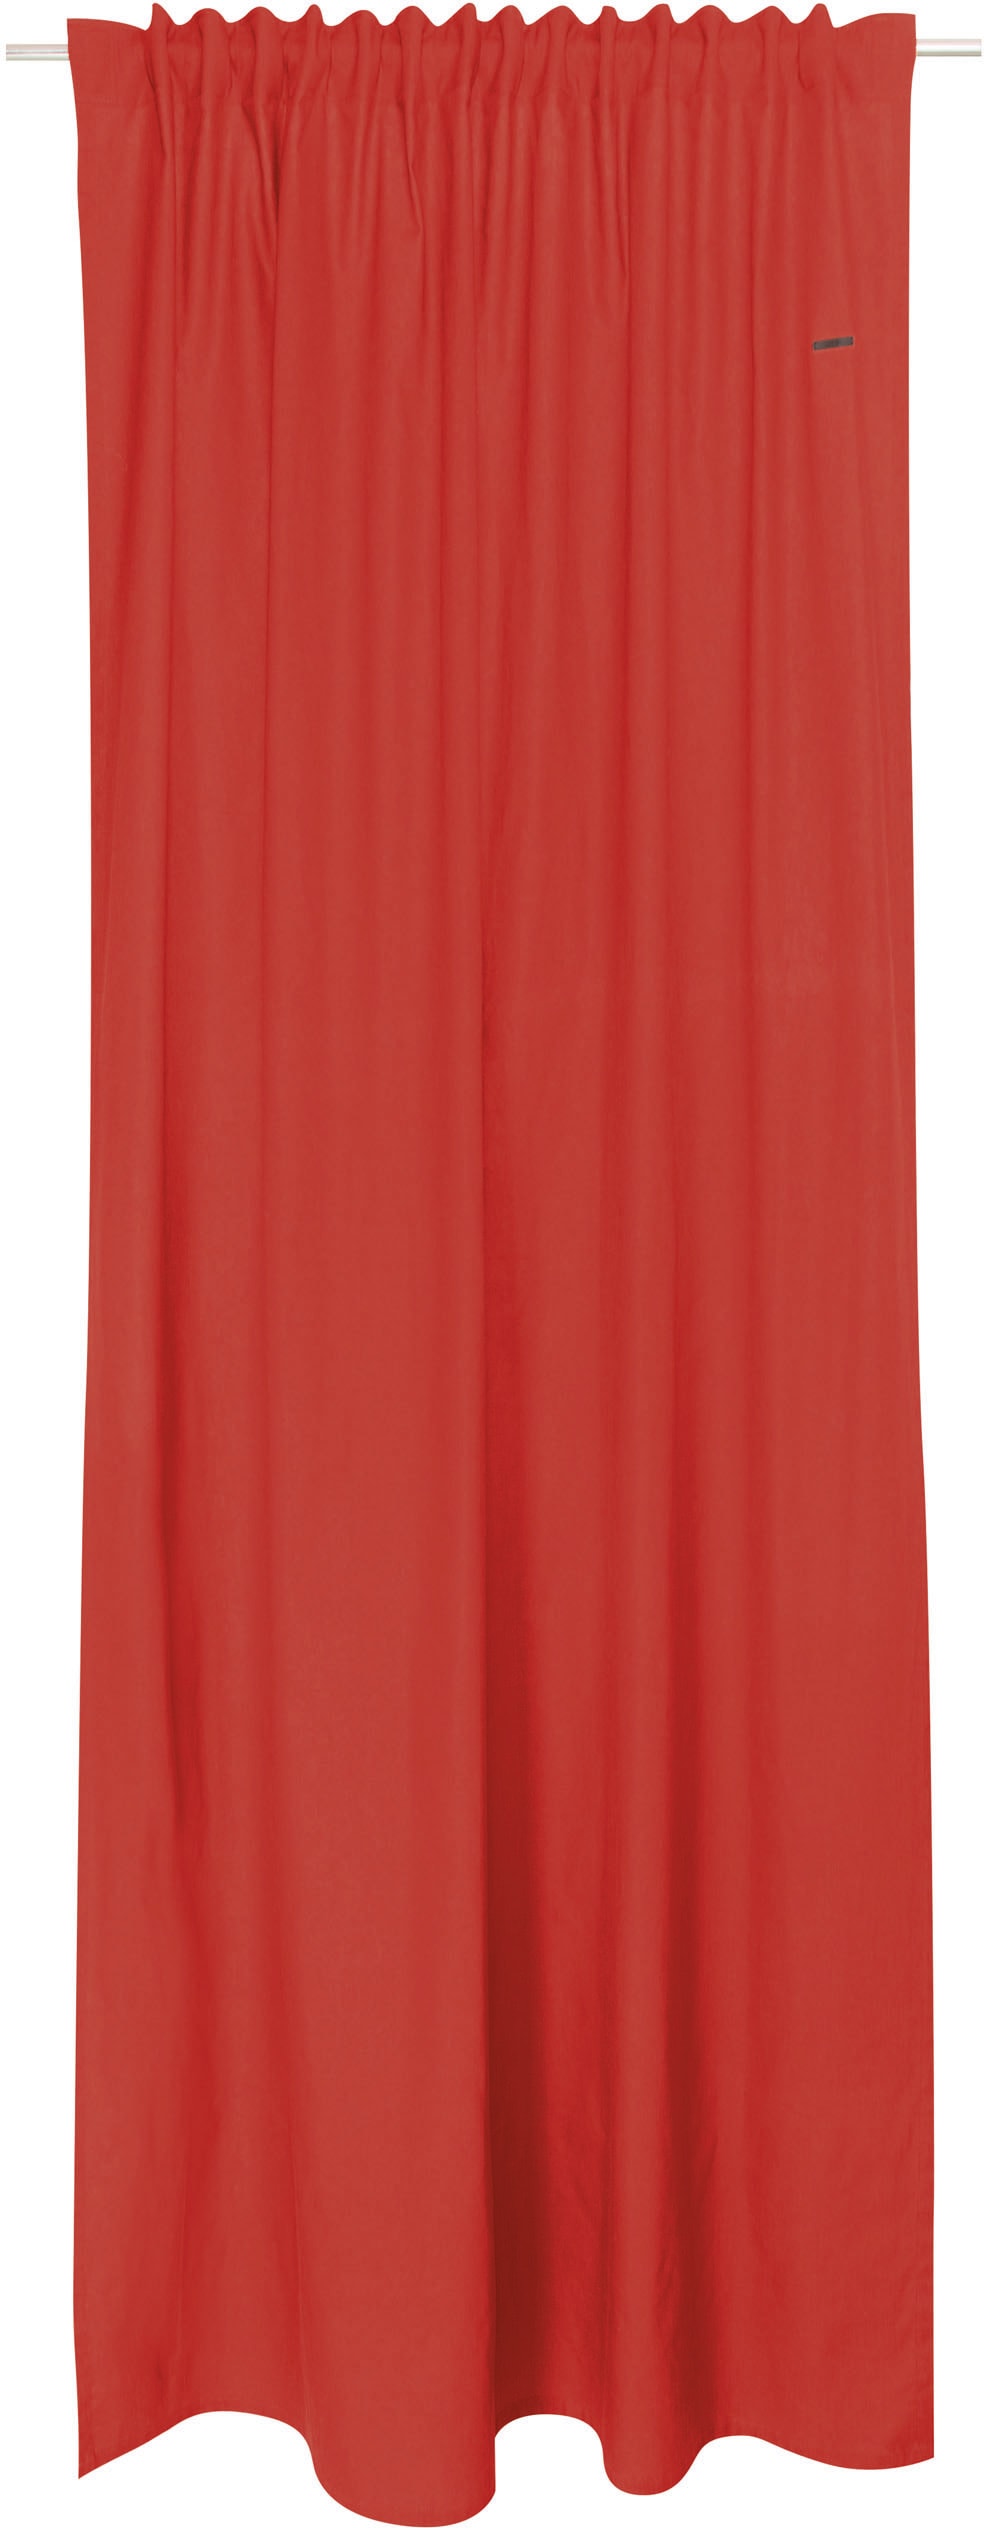 Esprit Vorhang »Neo«, (1 OTTO nachhaltiger bei St.), blickdicht Baumwolle, aus